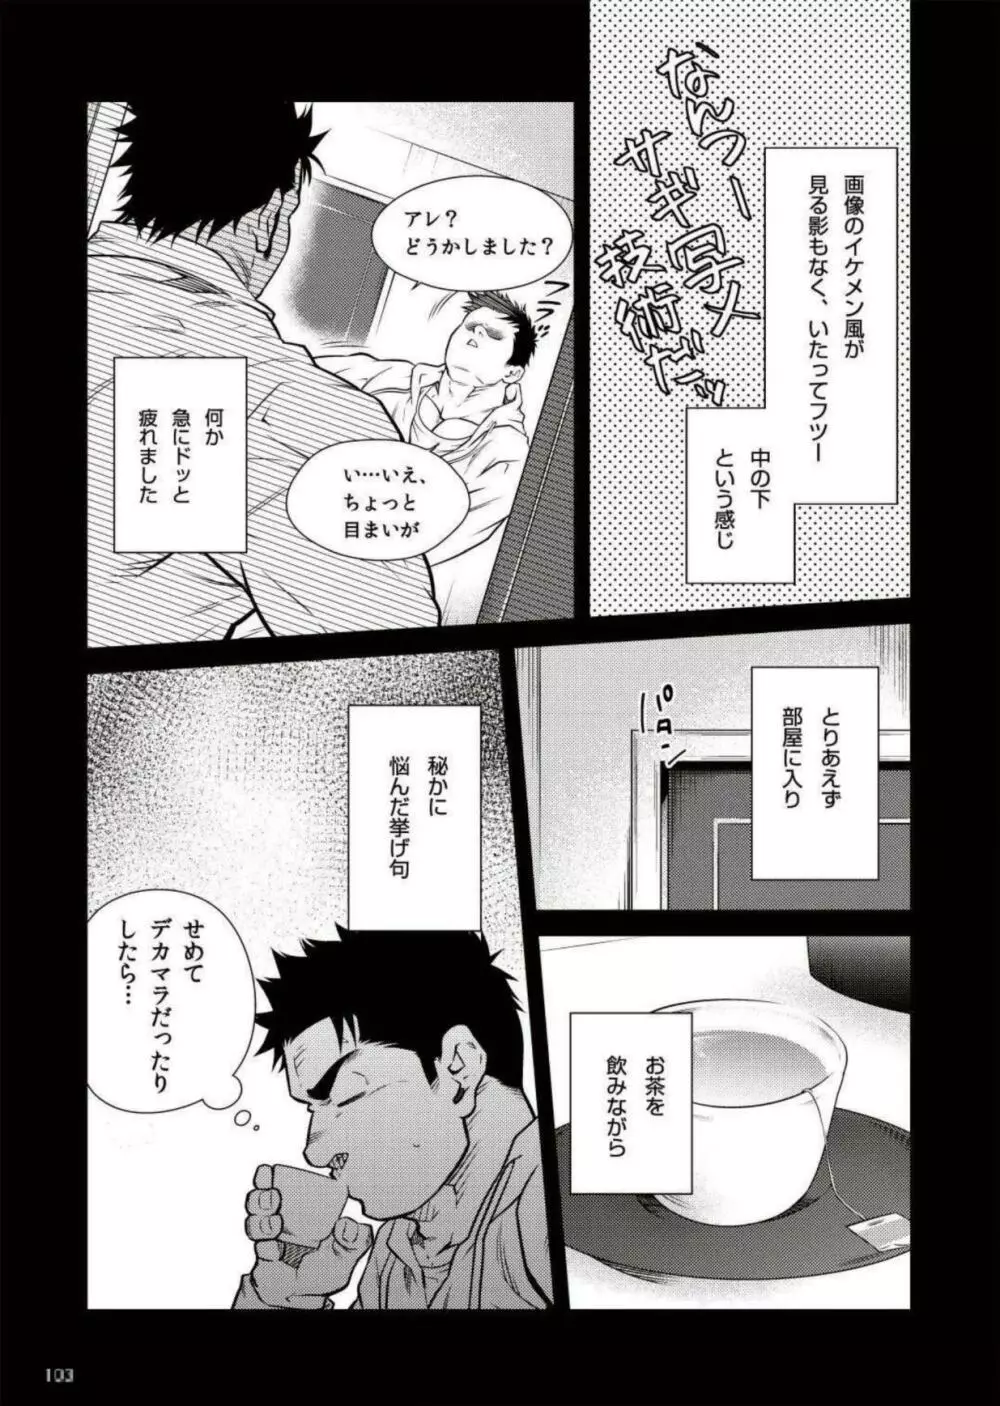 Terujirou - 晃次郎 - Badi Bʌ́di (バディ) 111 (May 2015) Page.5